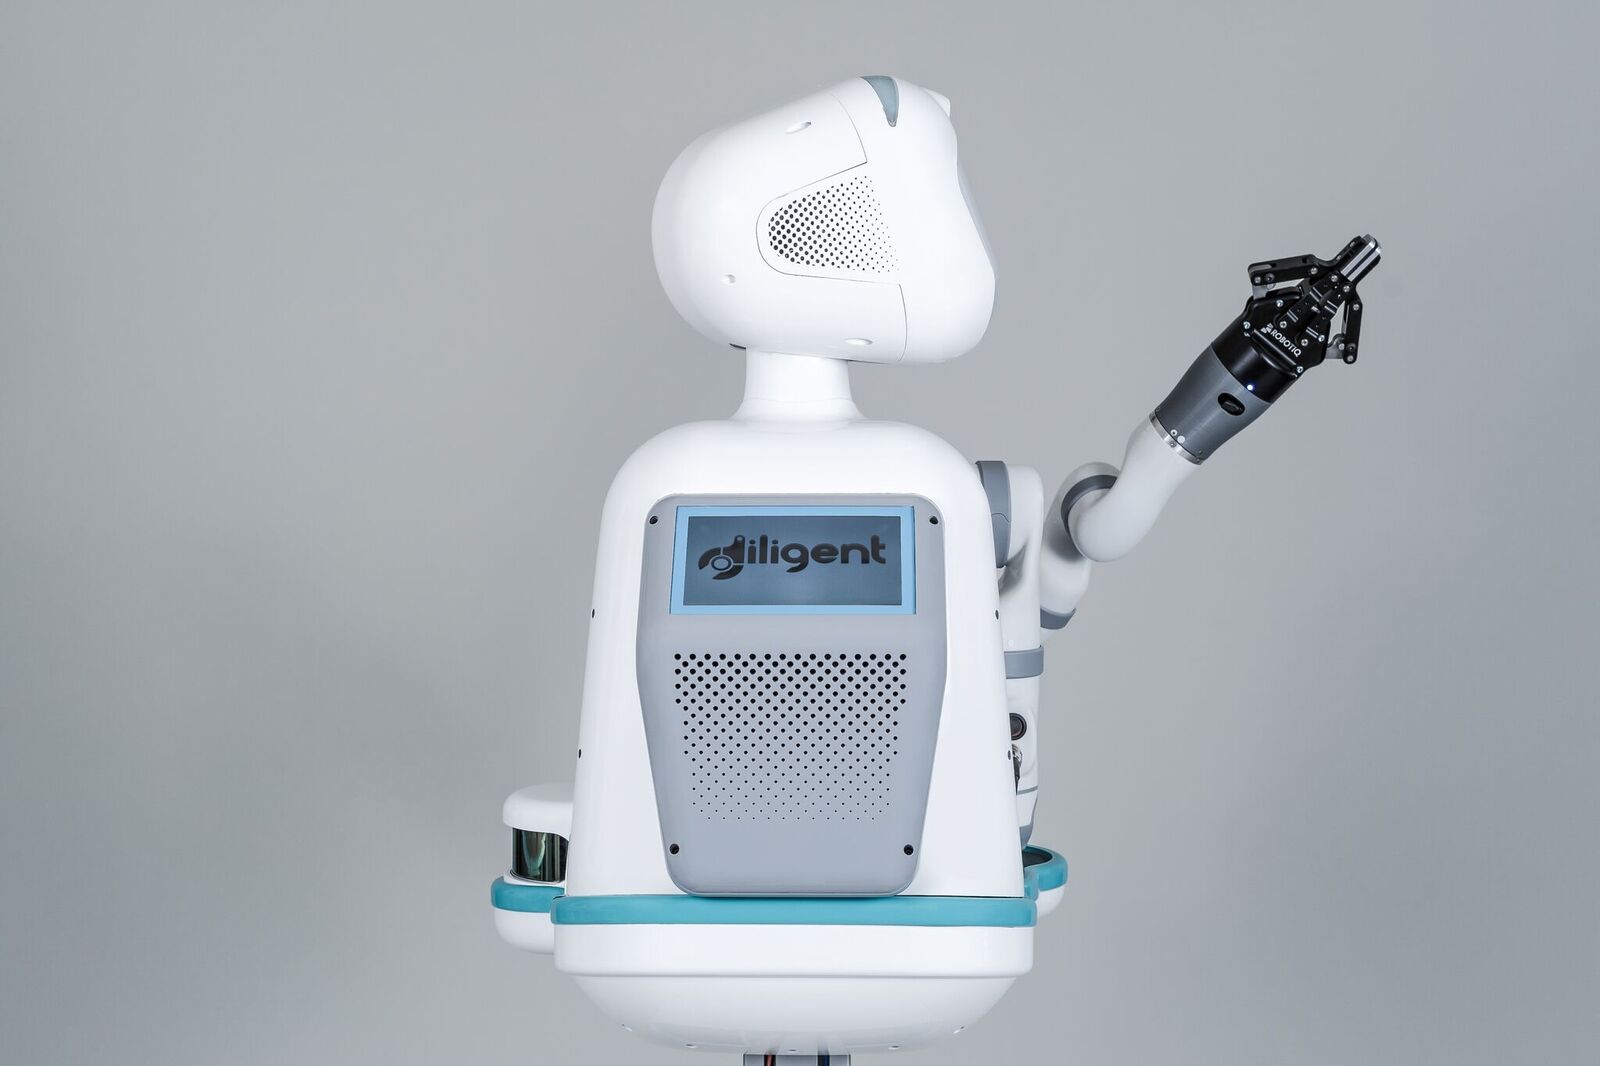 moxi hospital robot wants to help nurses 2